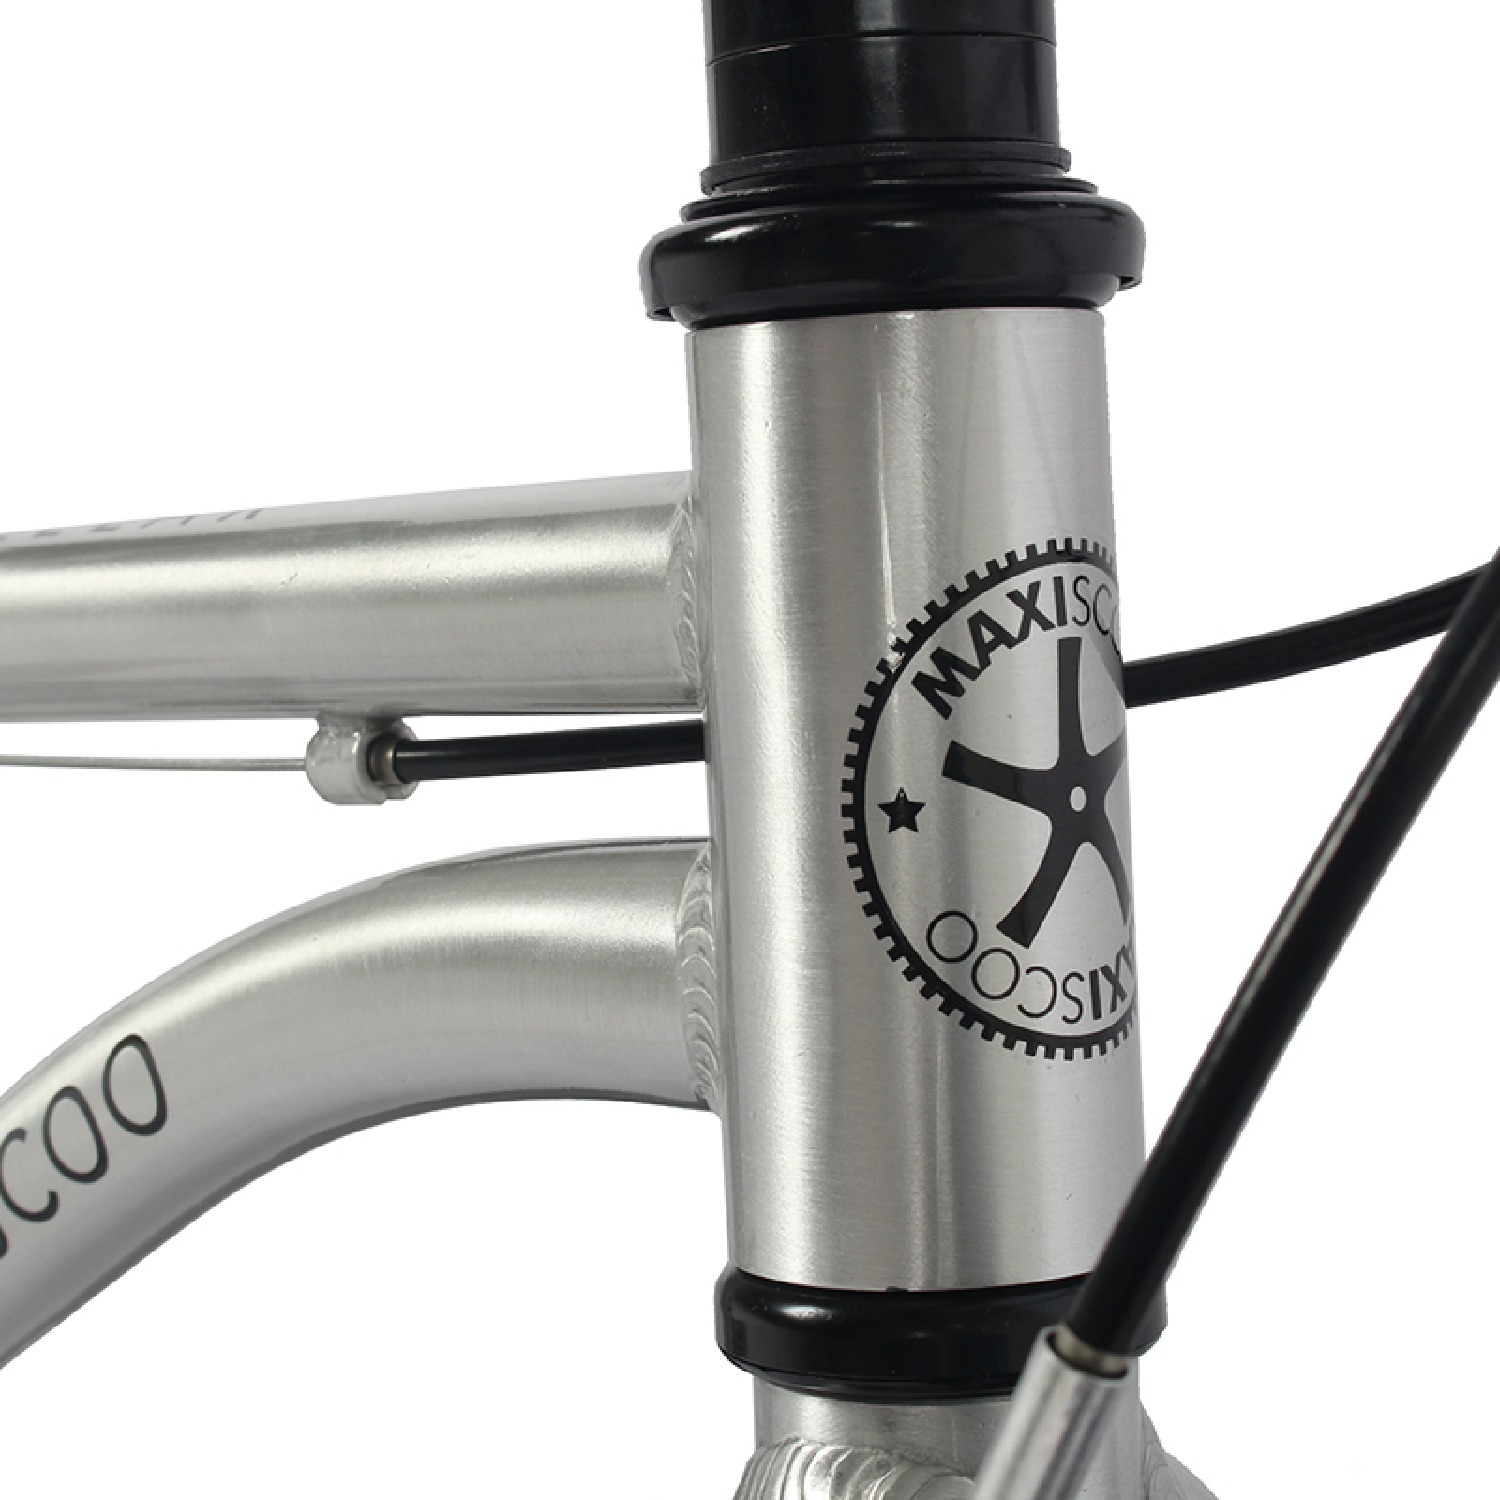 Велосипед MAXISCOO Air Stellar 18 2024 Серебро